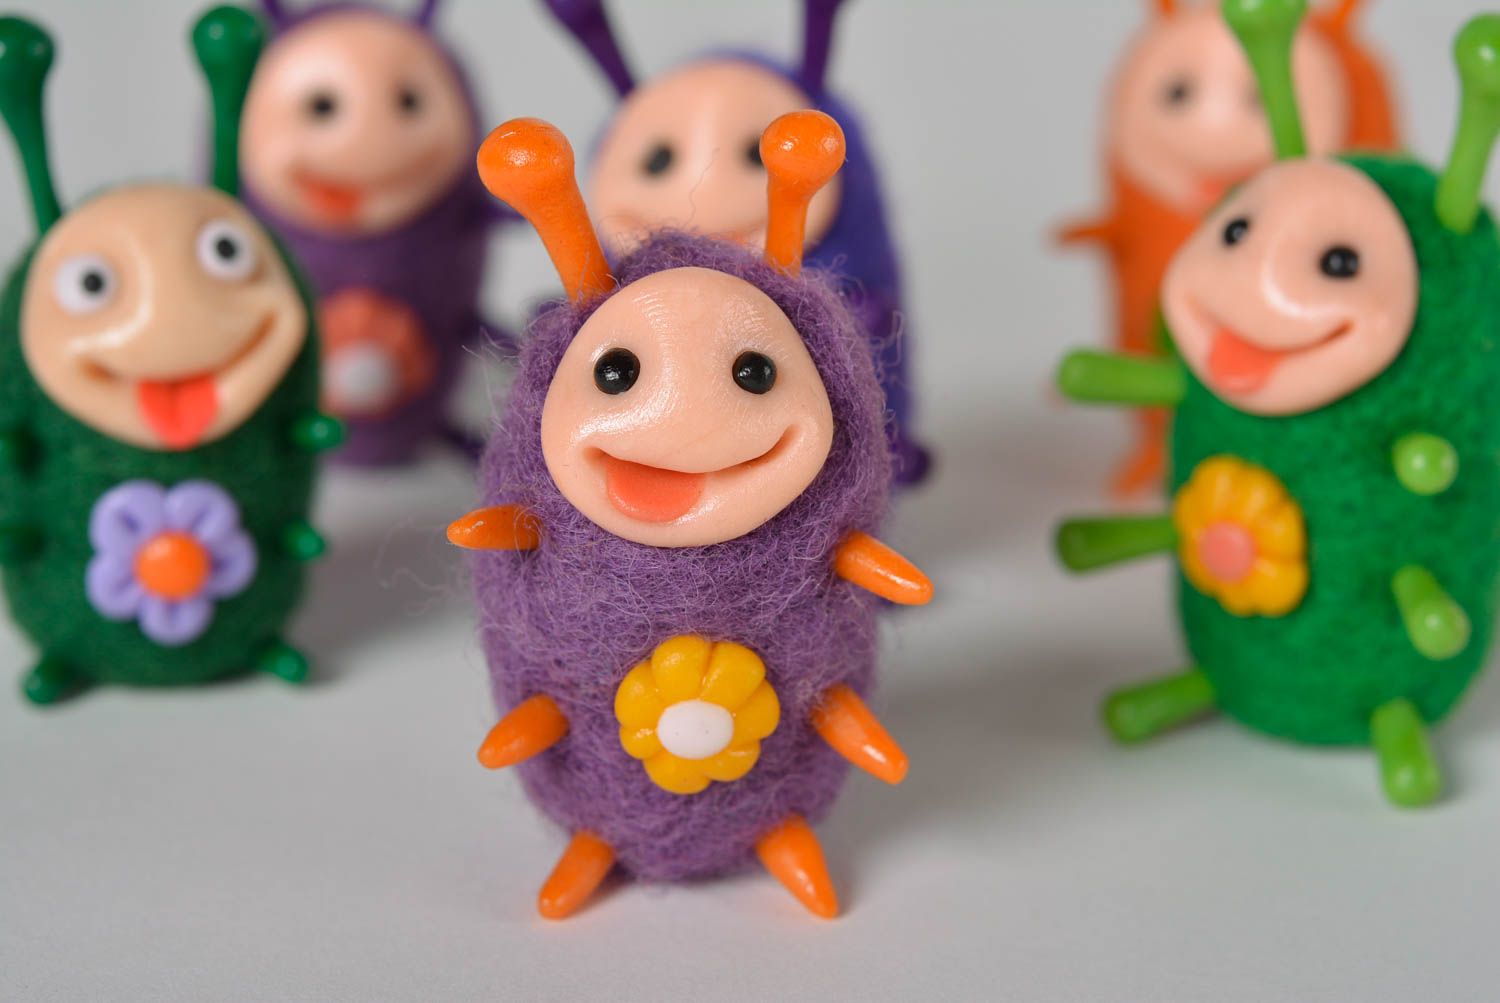 Violet woolen toy handmade plastic figurine designer interior ideas cute gift photo 4